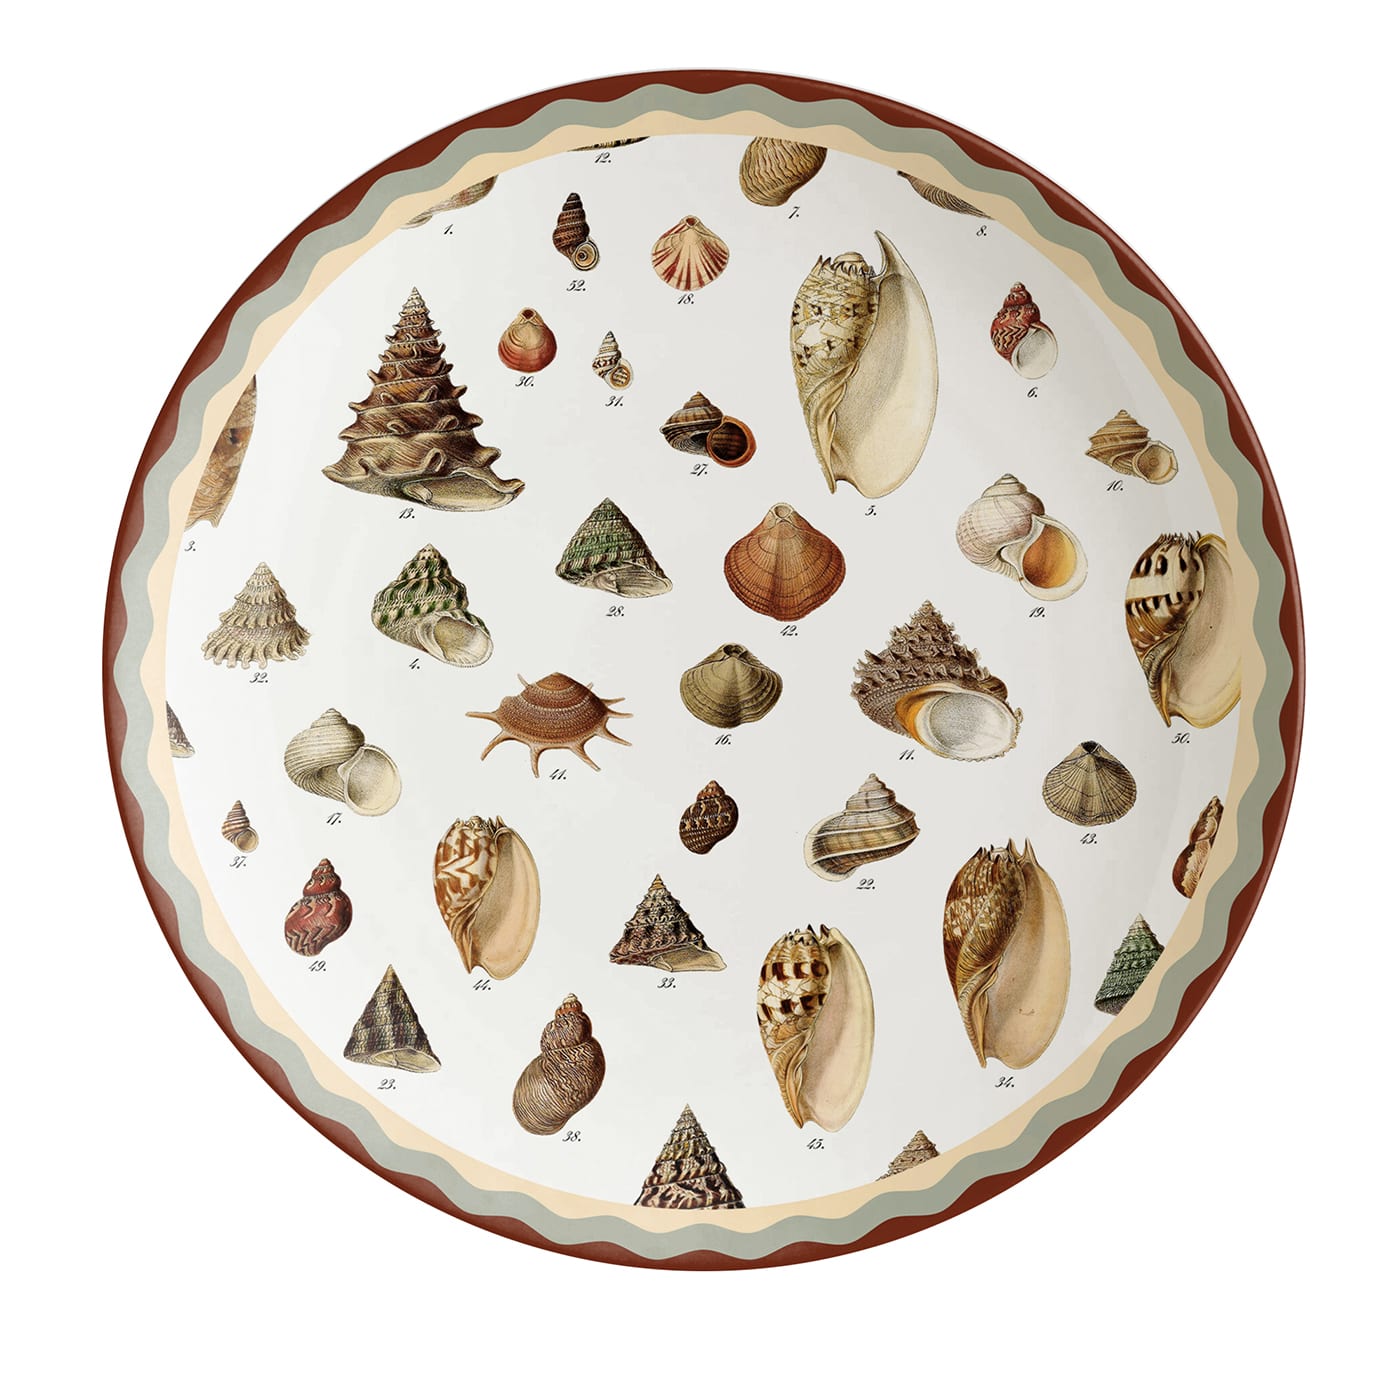 Cabinet de Curiosités Shells Dinner Plate - Grand Tour by Vito Nesta